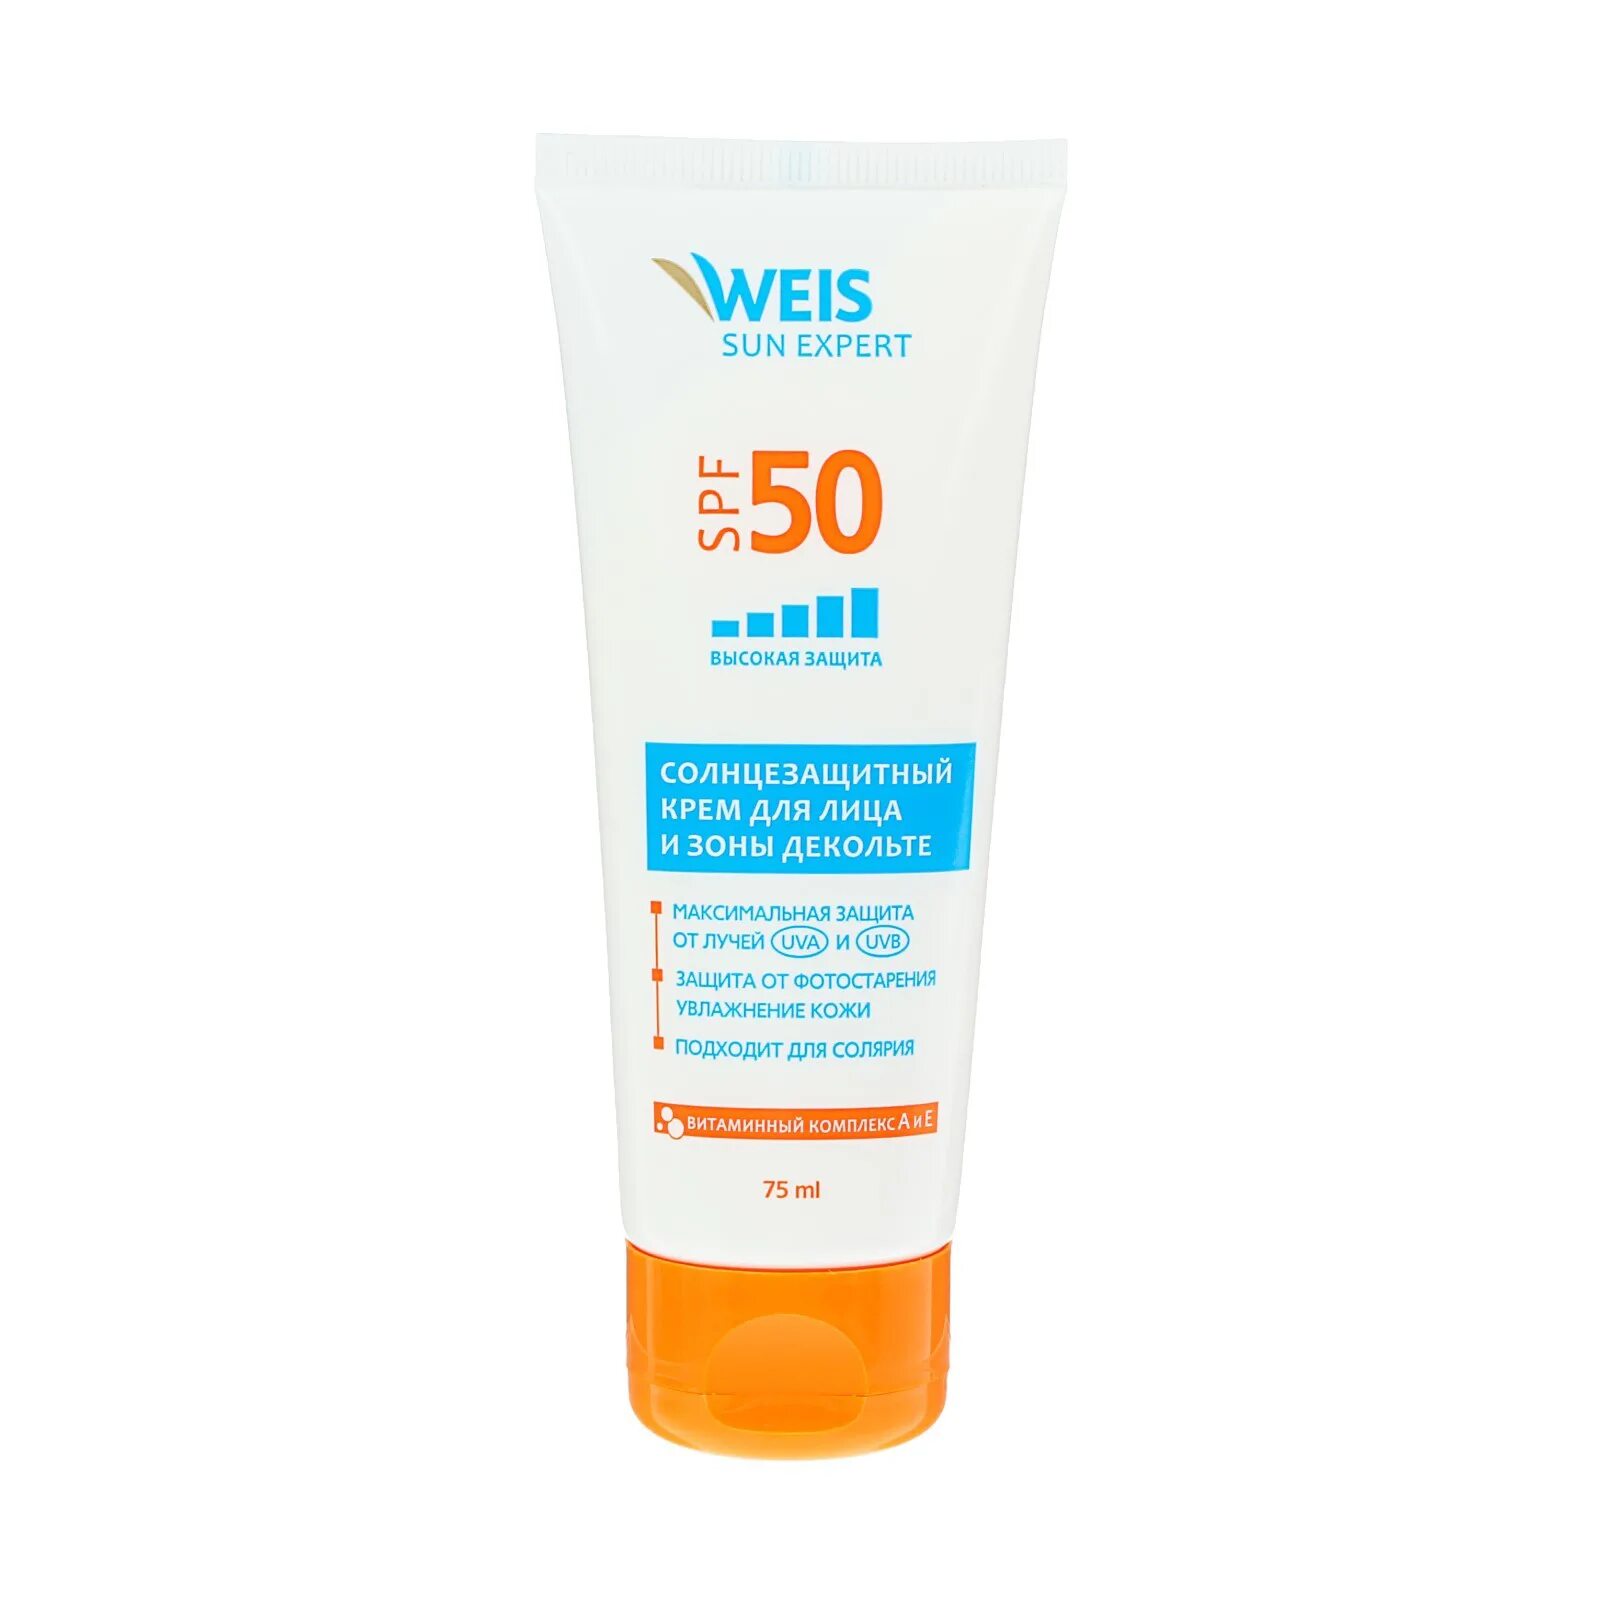 Солнцезащитный крем для лица SPF 50 Sun Cream. Солнцезащитные крем от загара СПФ 50. Weis крем солнцезащитный для лица и зоны декольте SPF 50 75мл. Крем солнцезащитный Weis 75мл spf50.